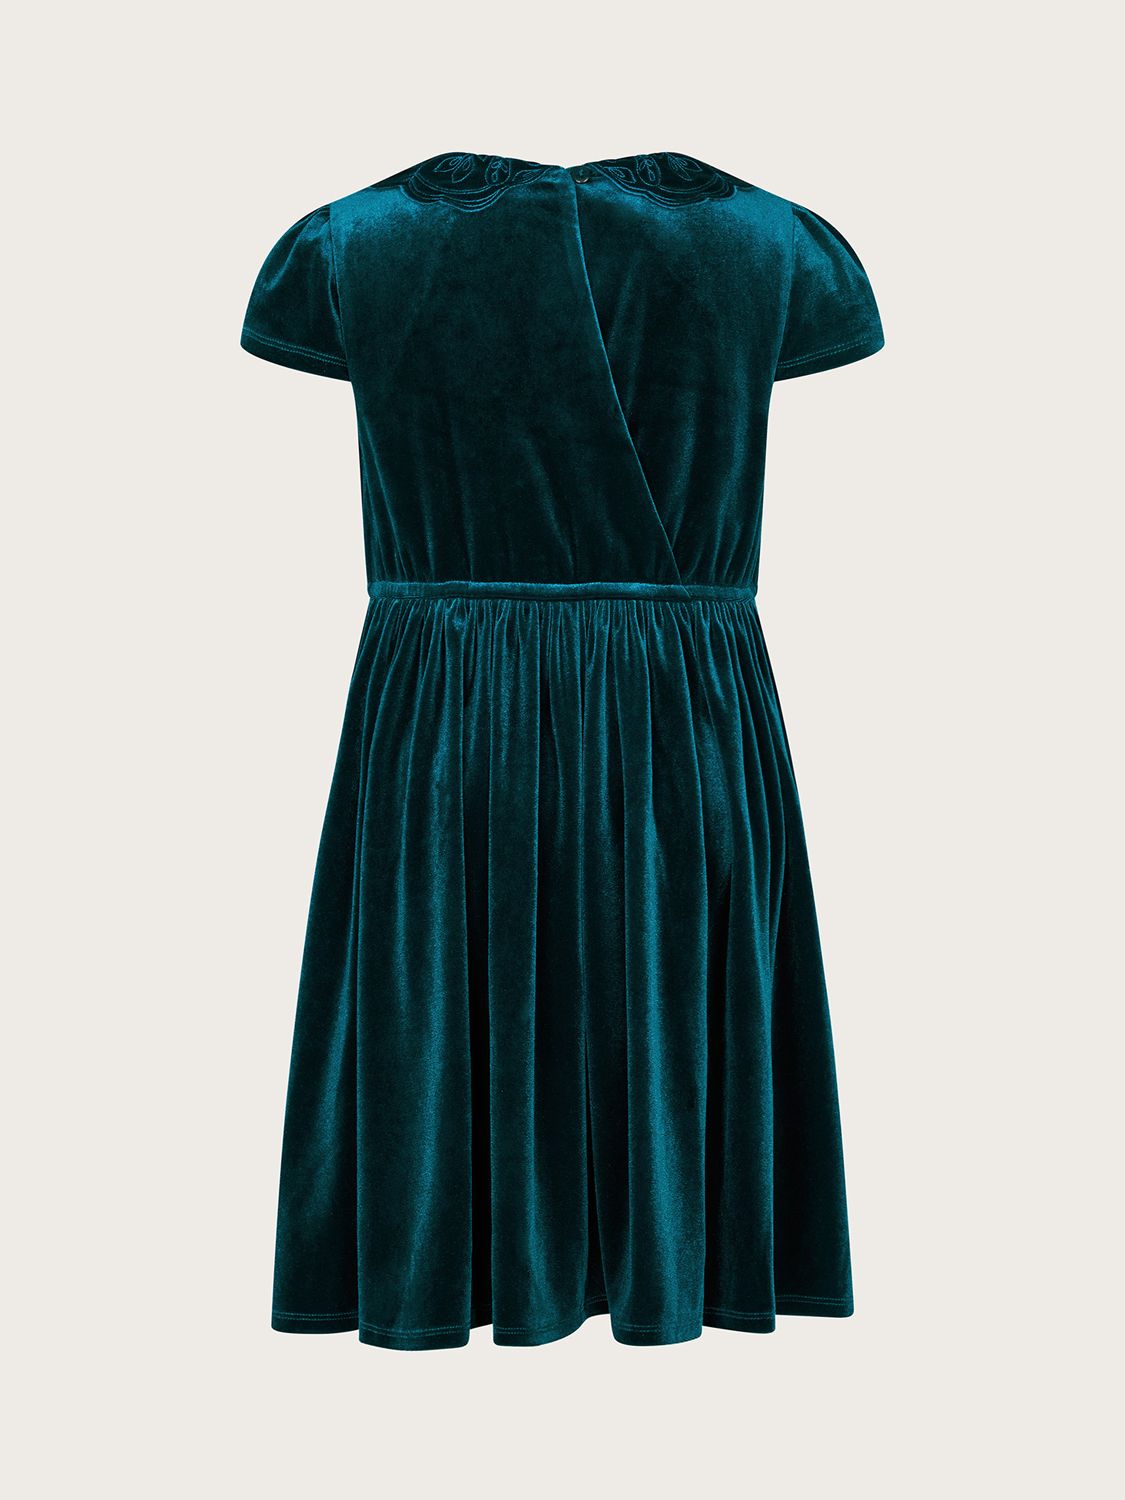 Buy Monsoon Kids' Velvet Butterfly Collar Dress, Green Online at johnlewis.com